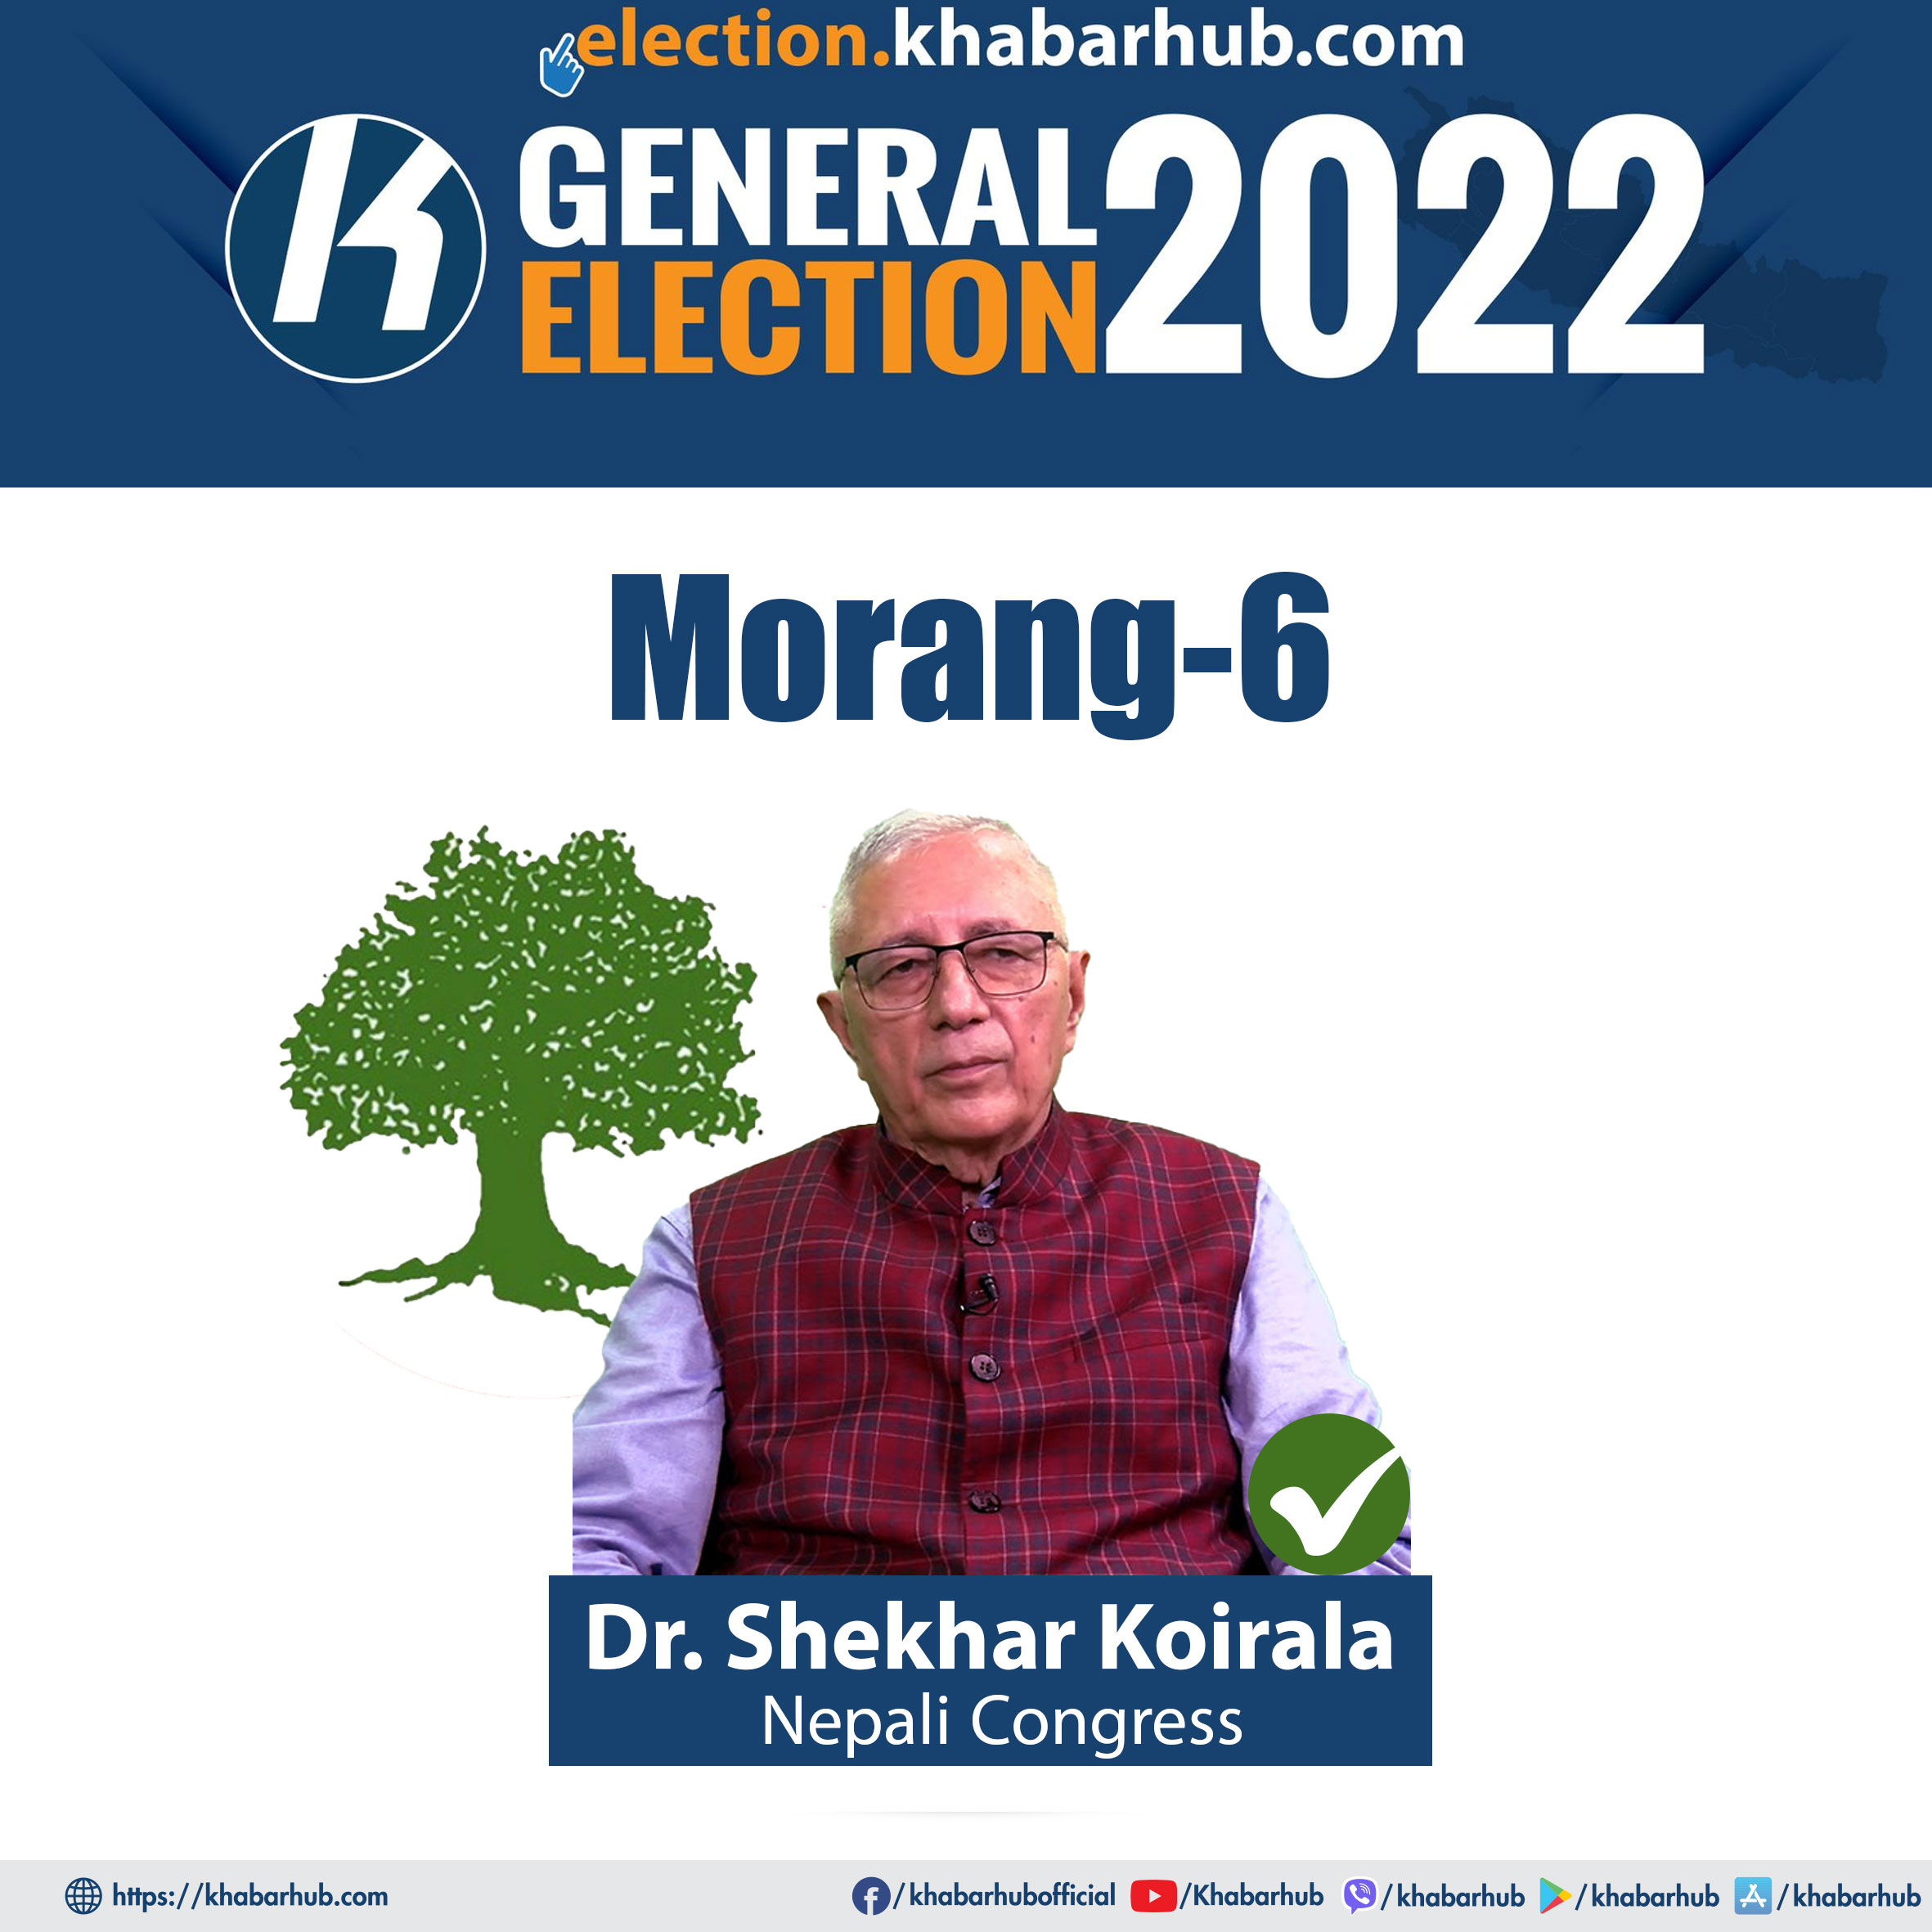 NC’s Dr. Shekhar Koirala elected from Morang-6